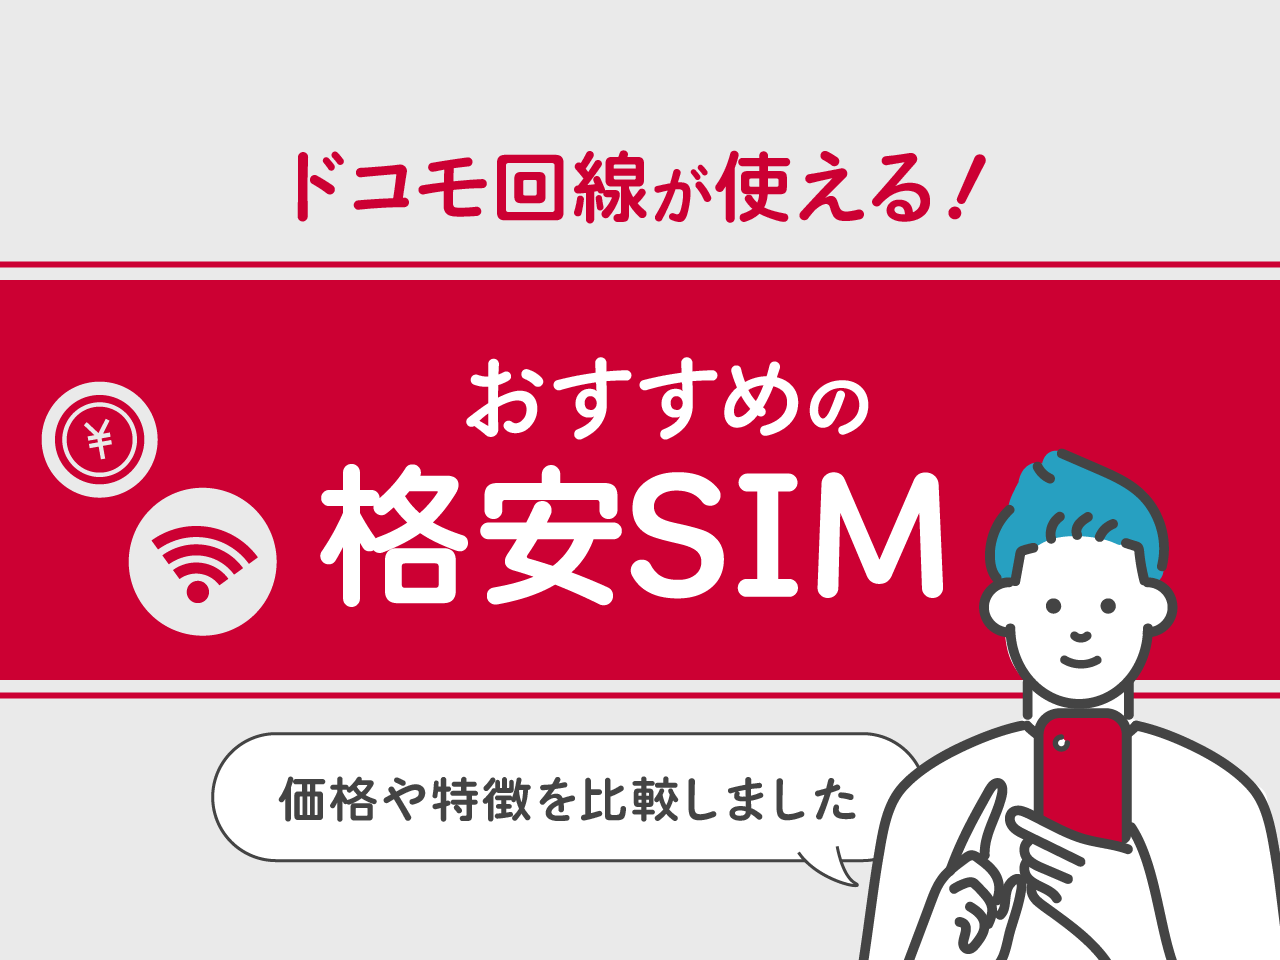 ドコモ回線が使えるおすすめ格安SIM